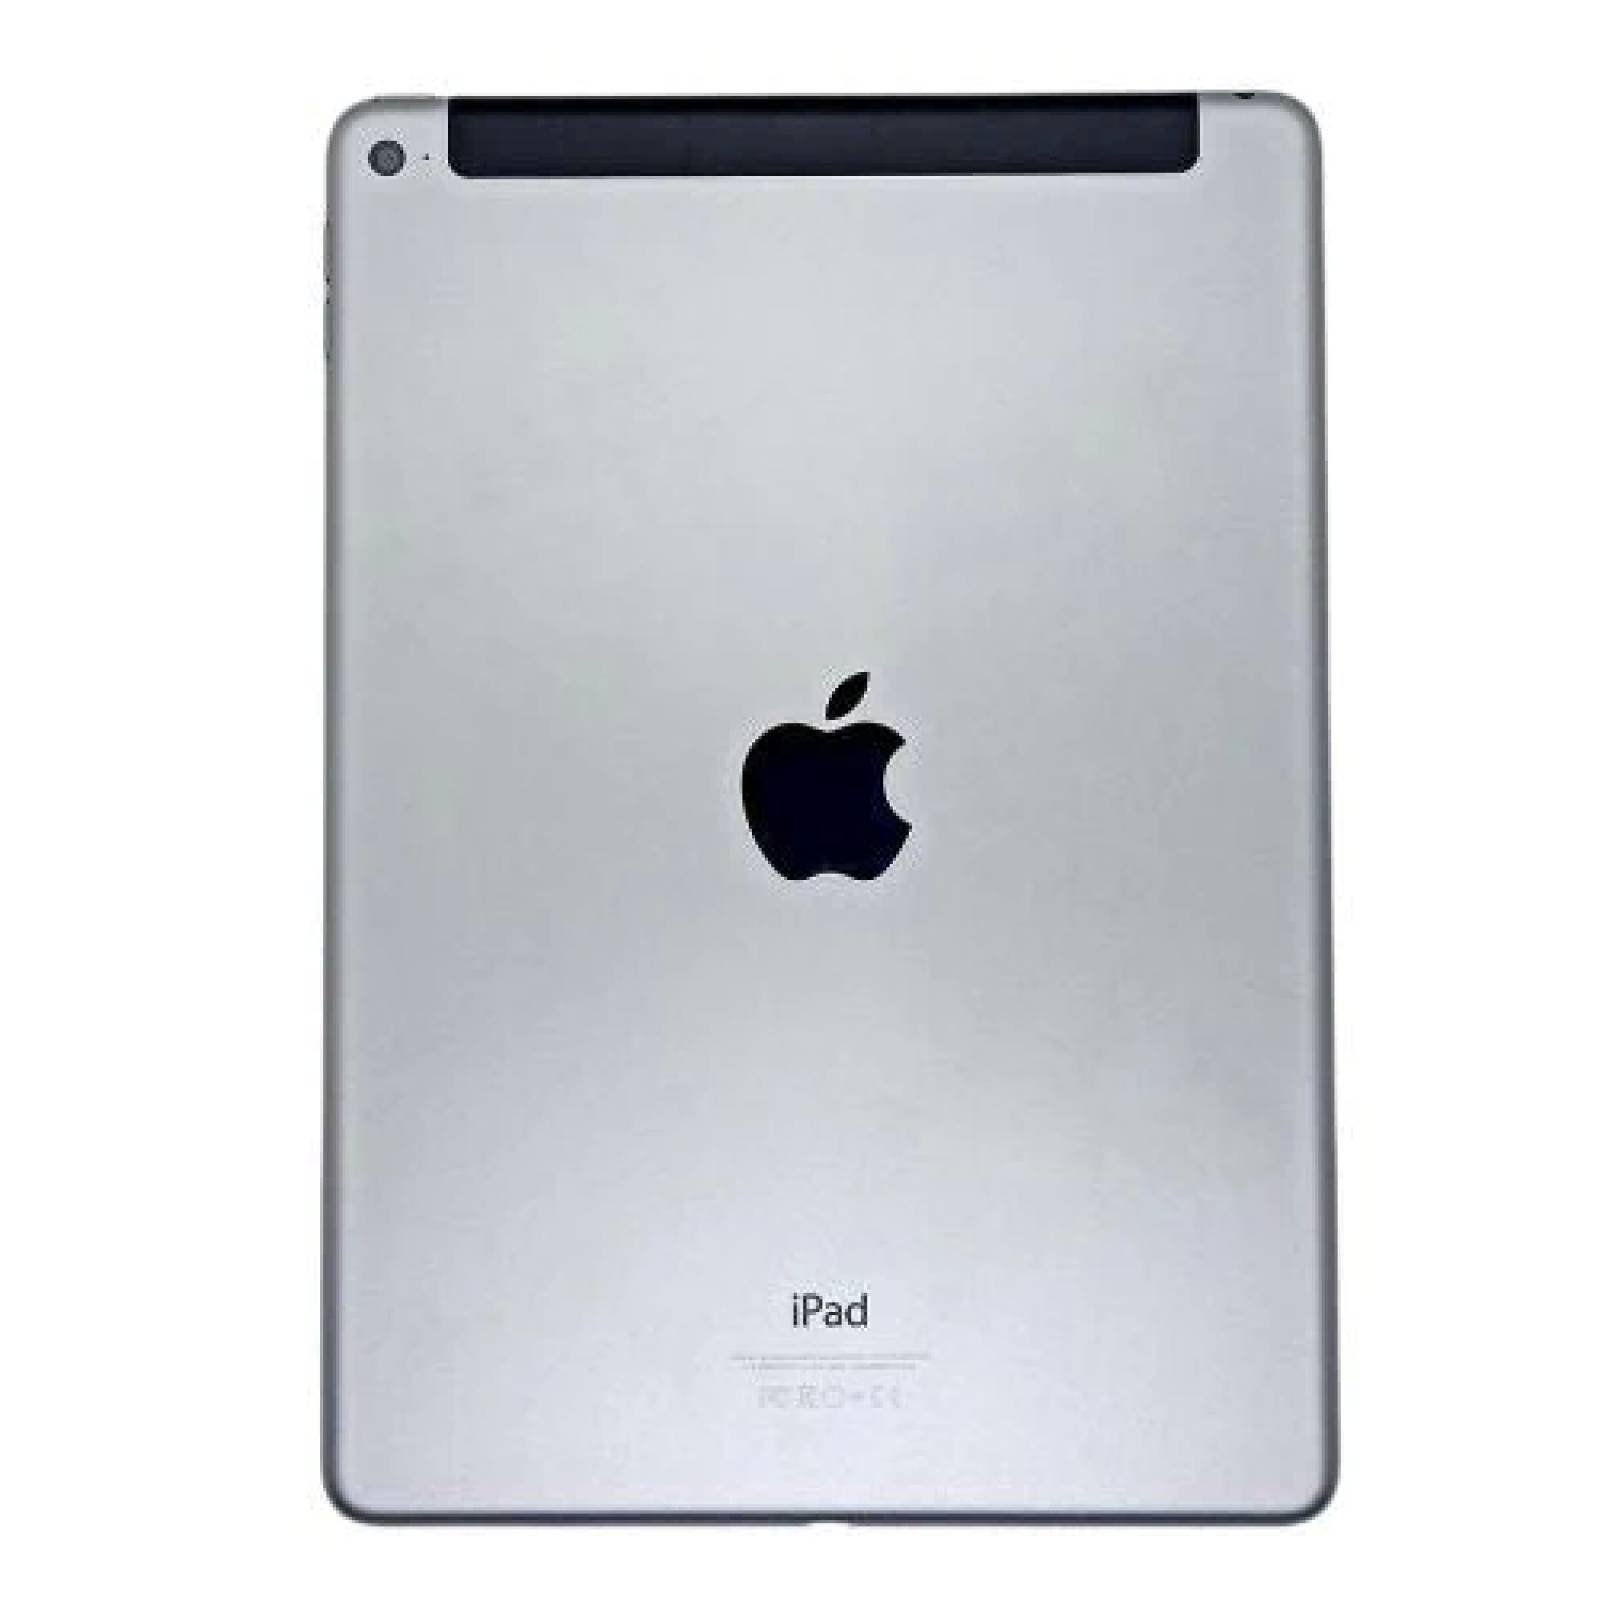  Apple iPad Air 2 versión más reciente (reacondicionado) :  Electrónica